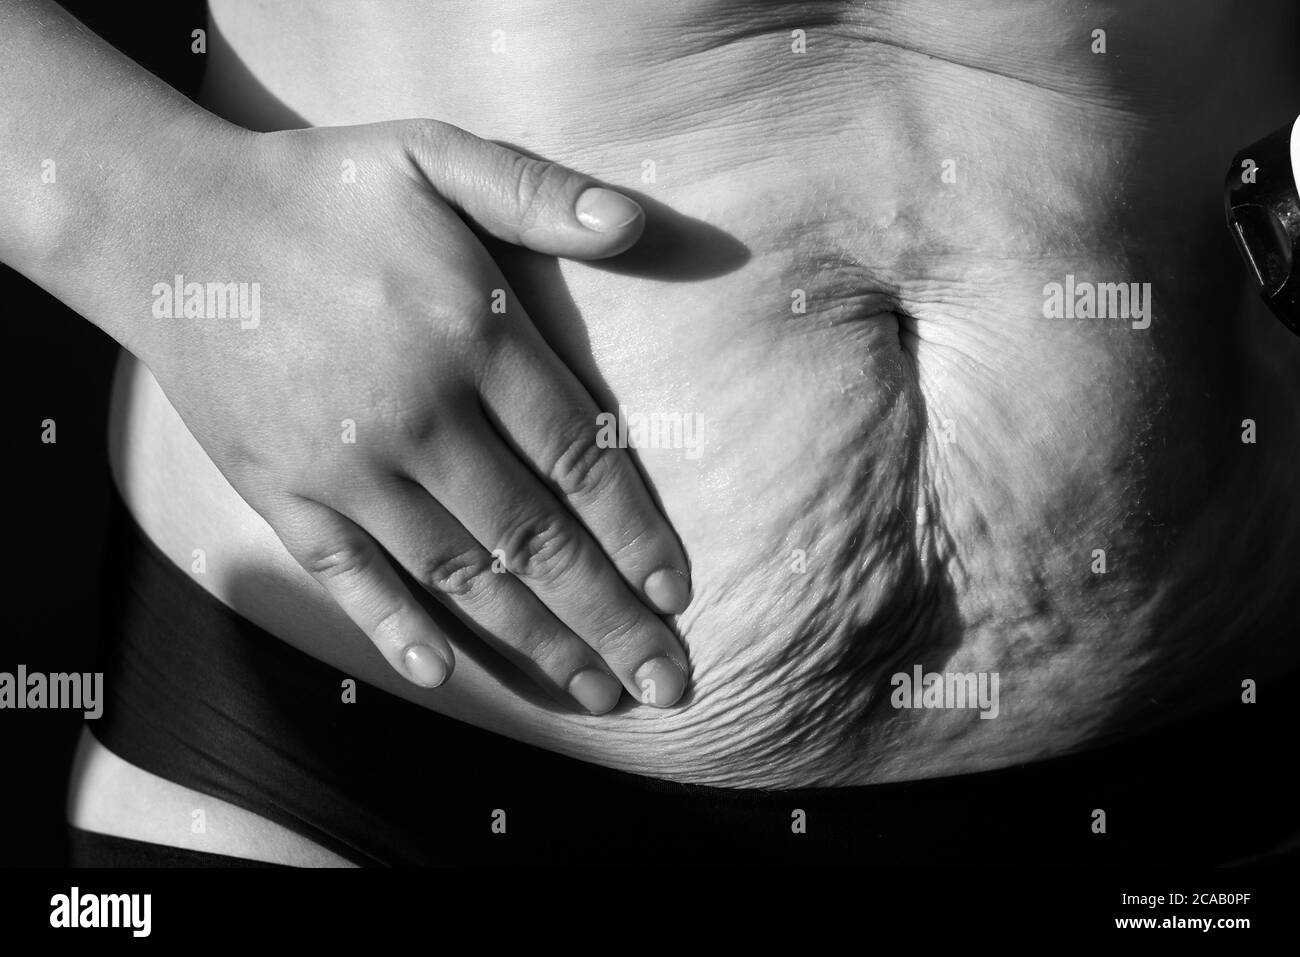 La femme sent une crème nutritive qui se laboure le ventre avec des marques extensibles, gros plan, photo en noir et blanc. Banque D'Images